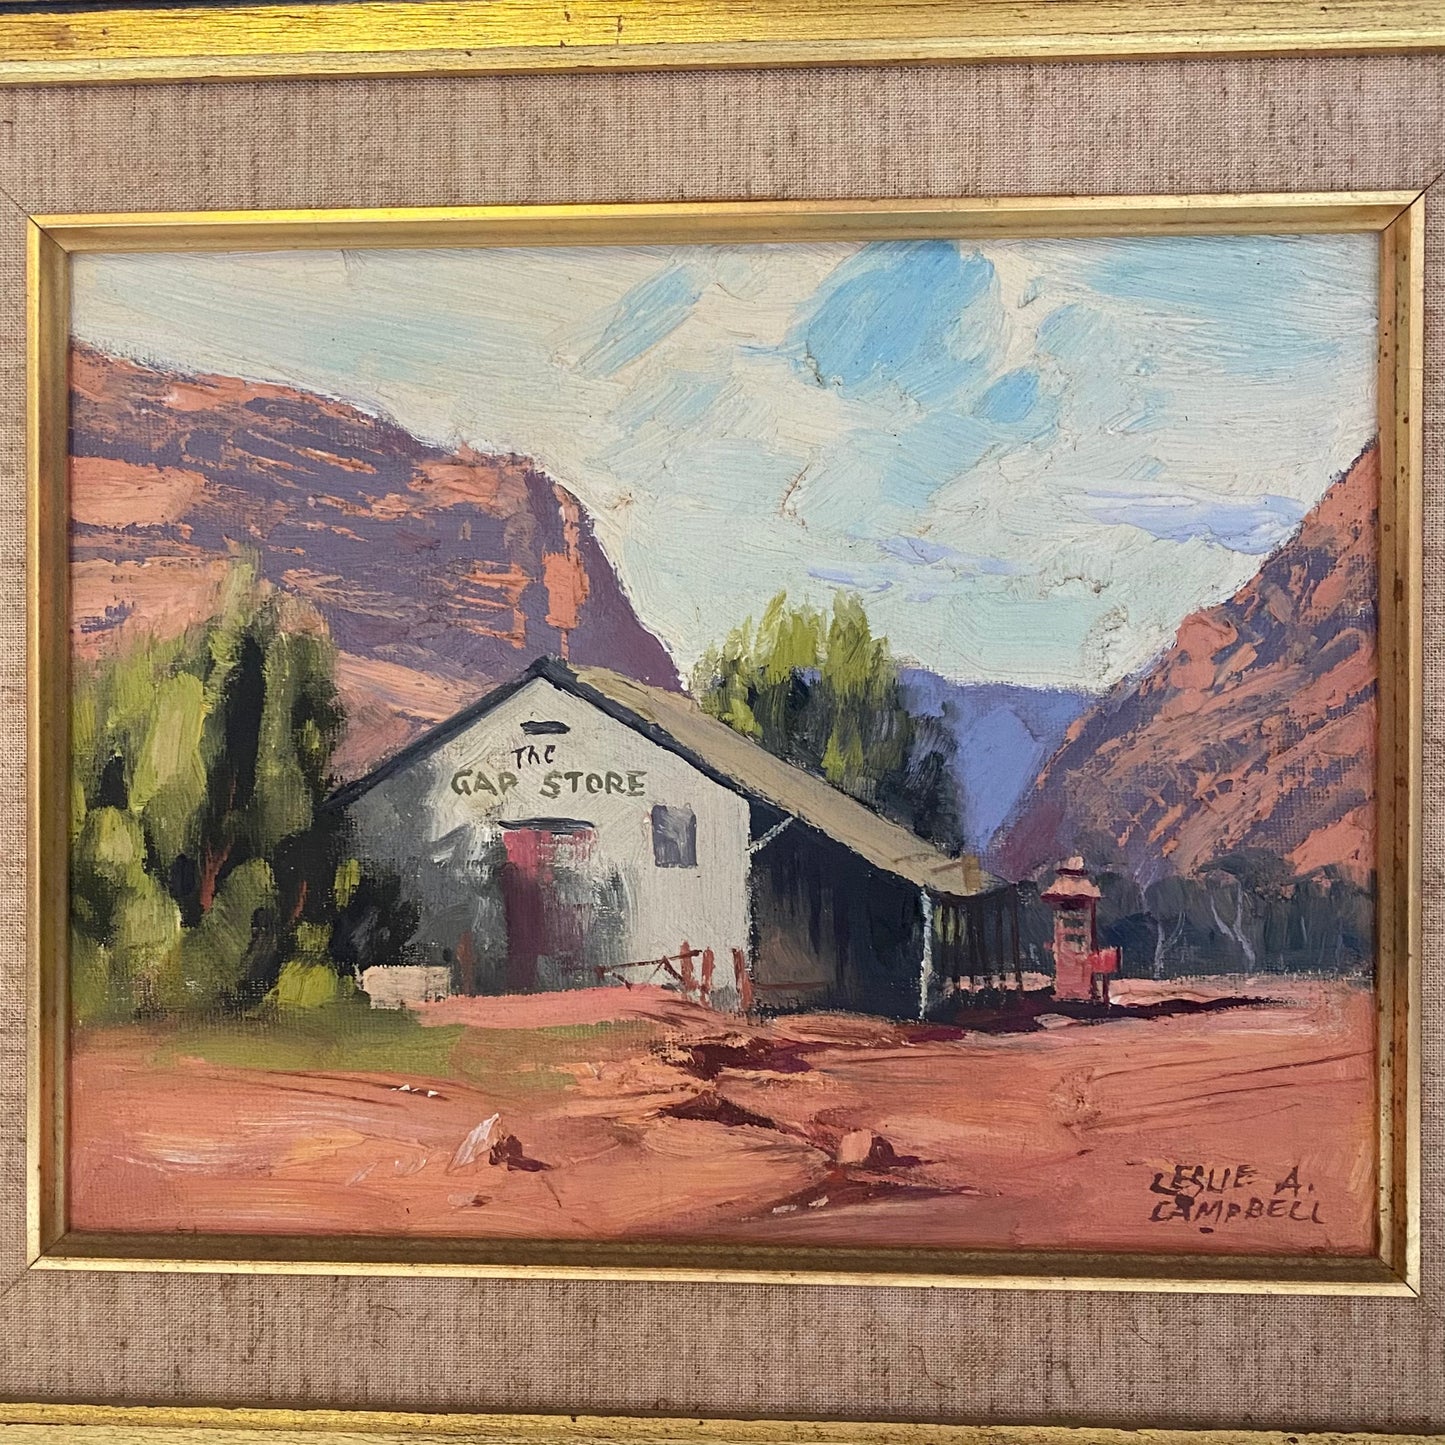 “爱丽丝泉的 Gap 商店”。20 世纪澳大利亚内陆油画，由著名艺术家 Leslie A. Campbell 创作